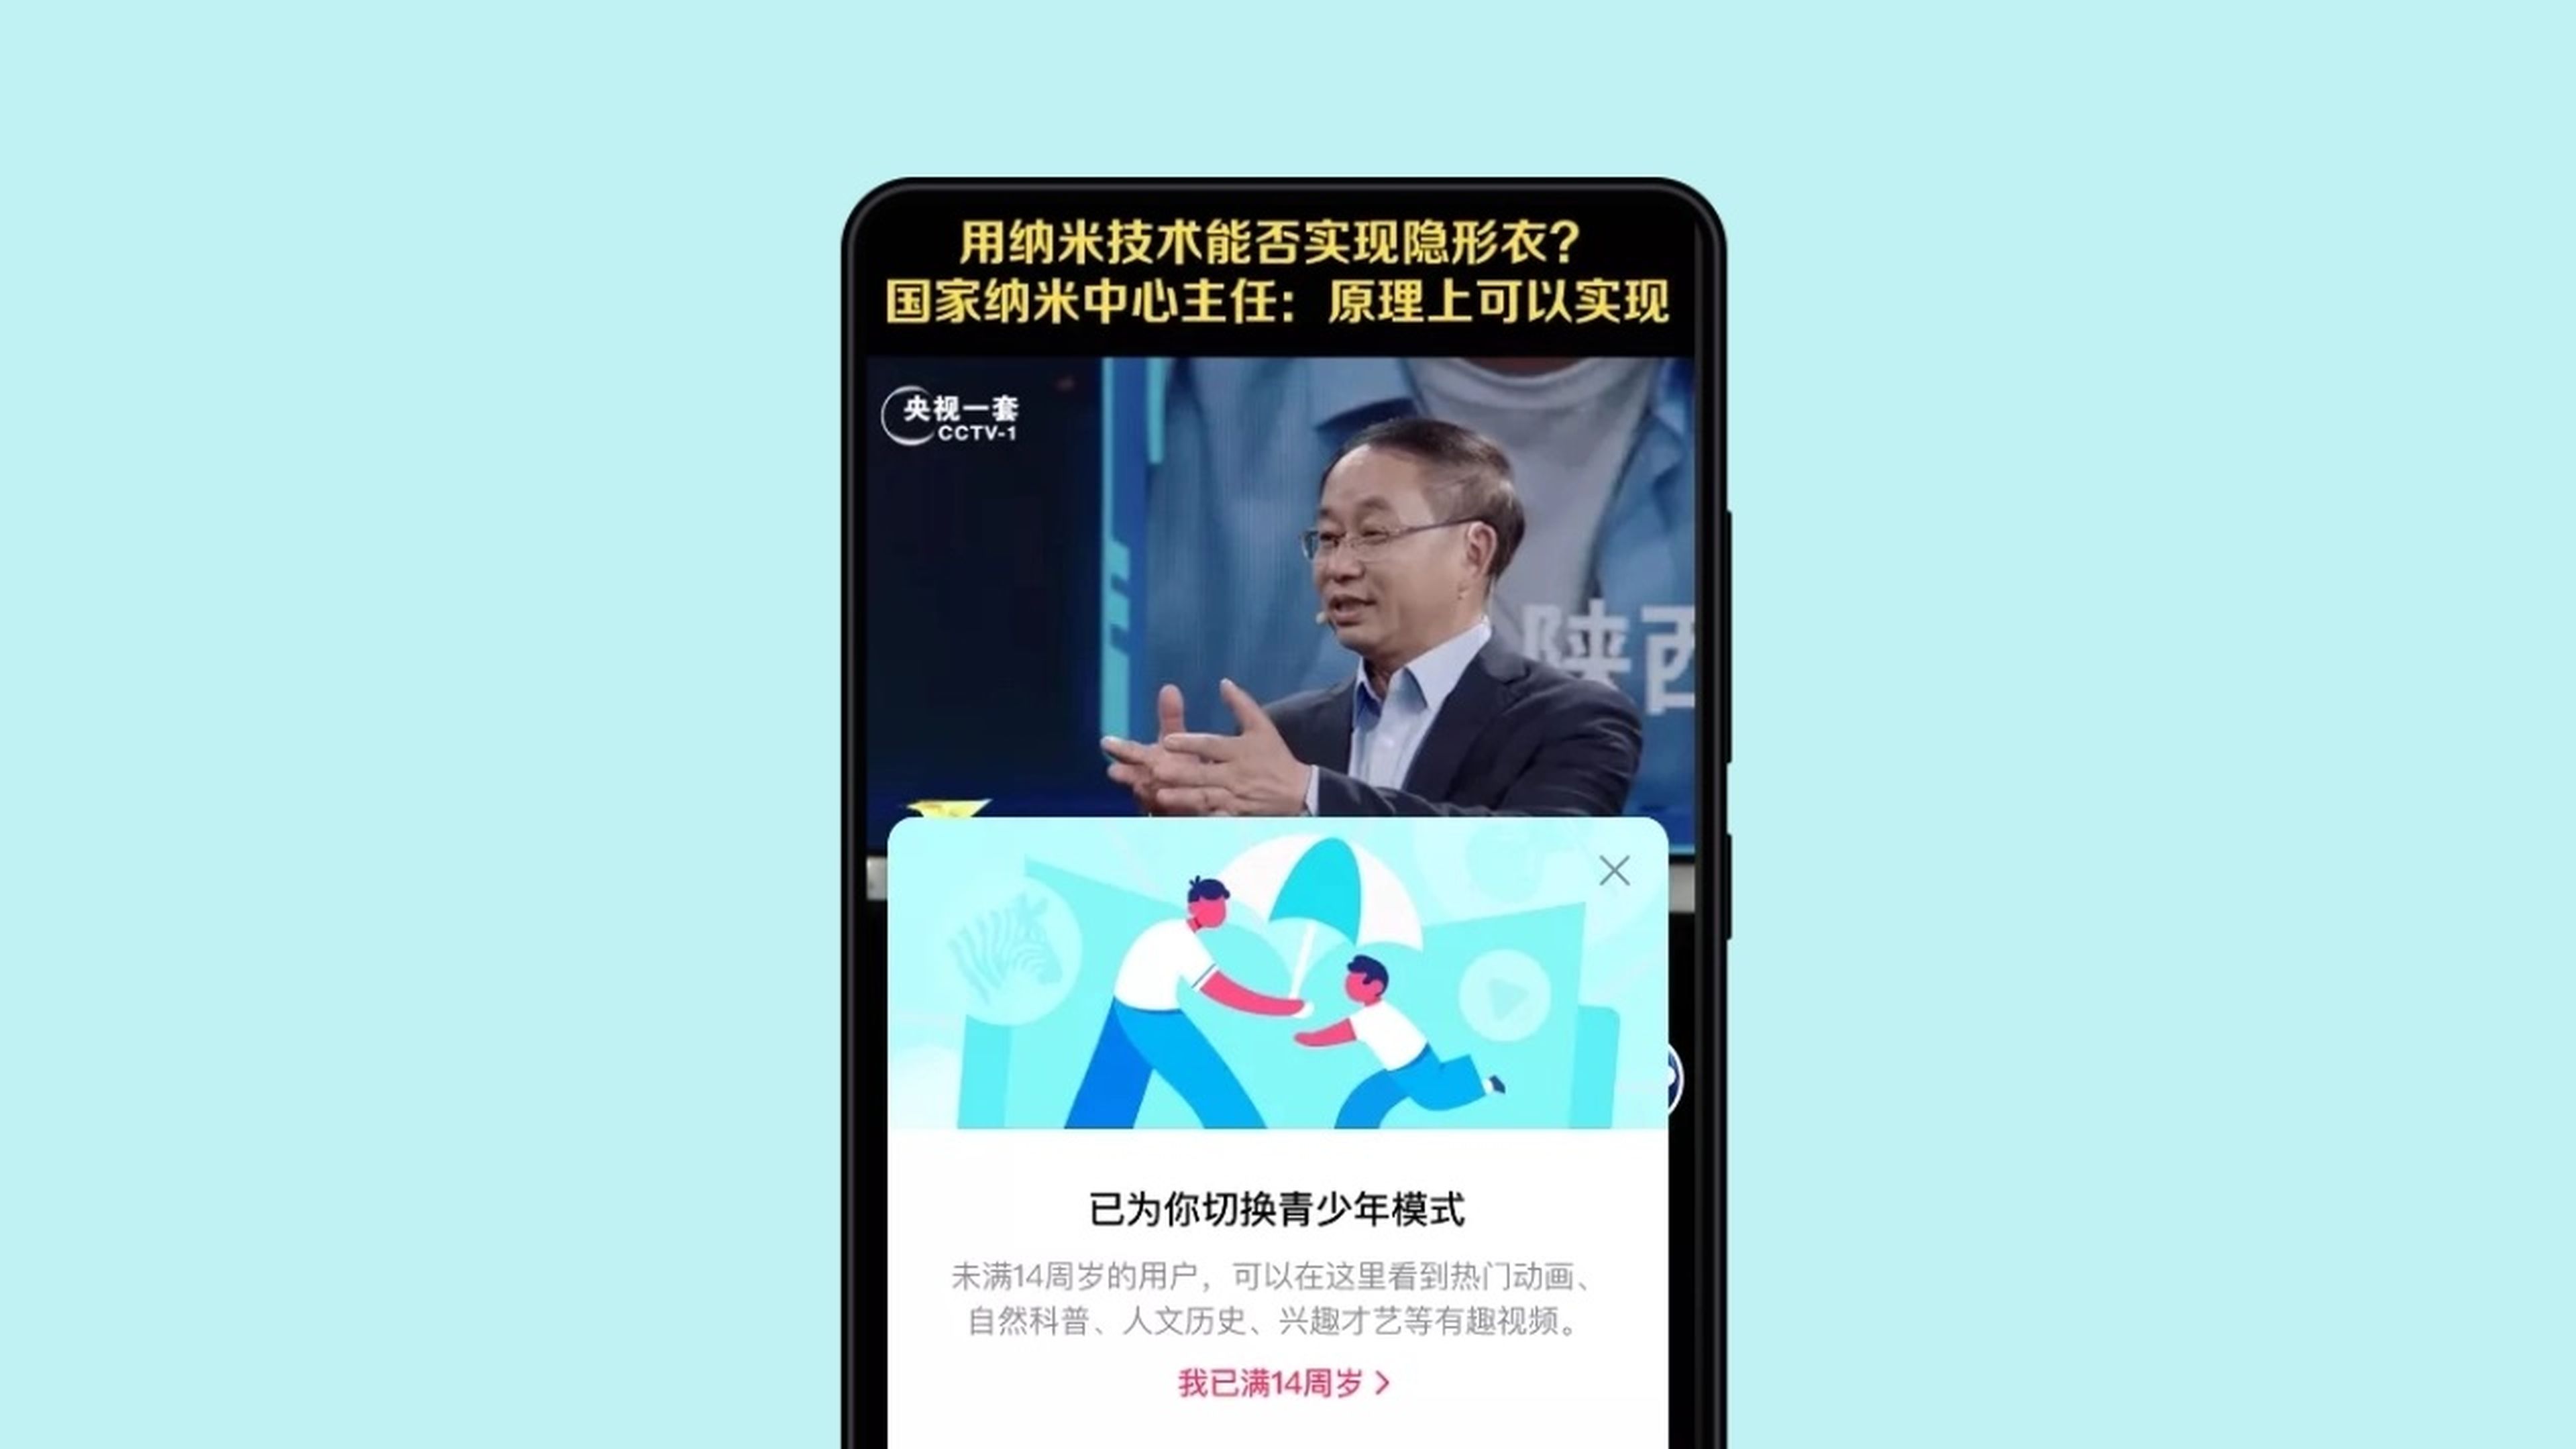 Advertencia de TikTok para los niños en China